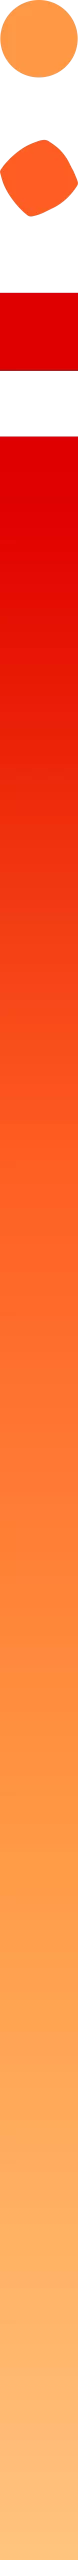 Elementos gráficos división vertical gradiente naranja a rojo | Lithos | Marketing Ágil